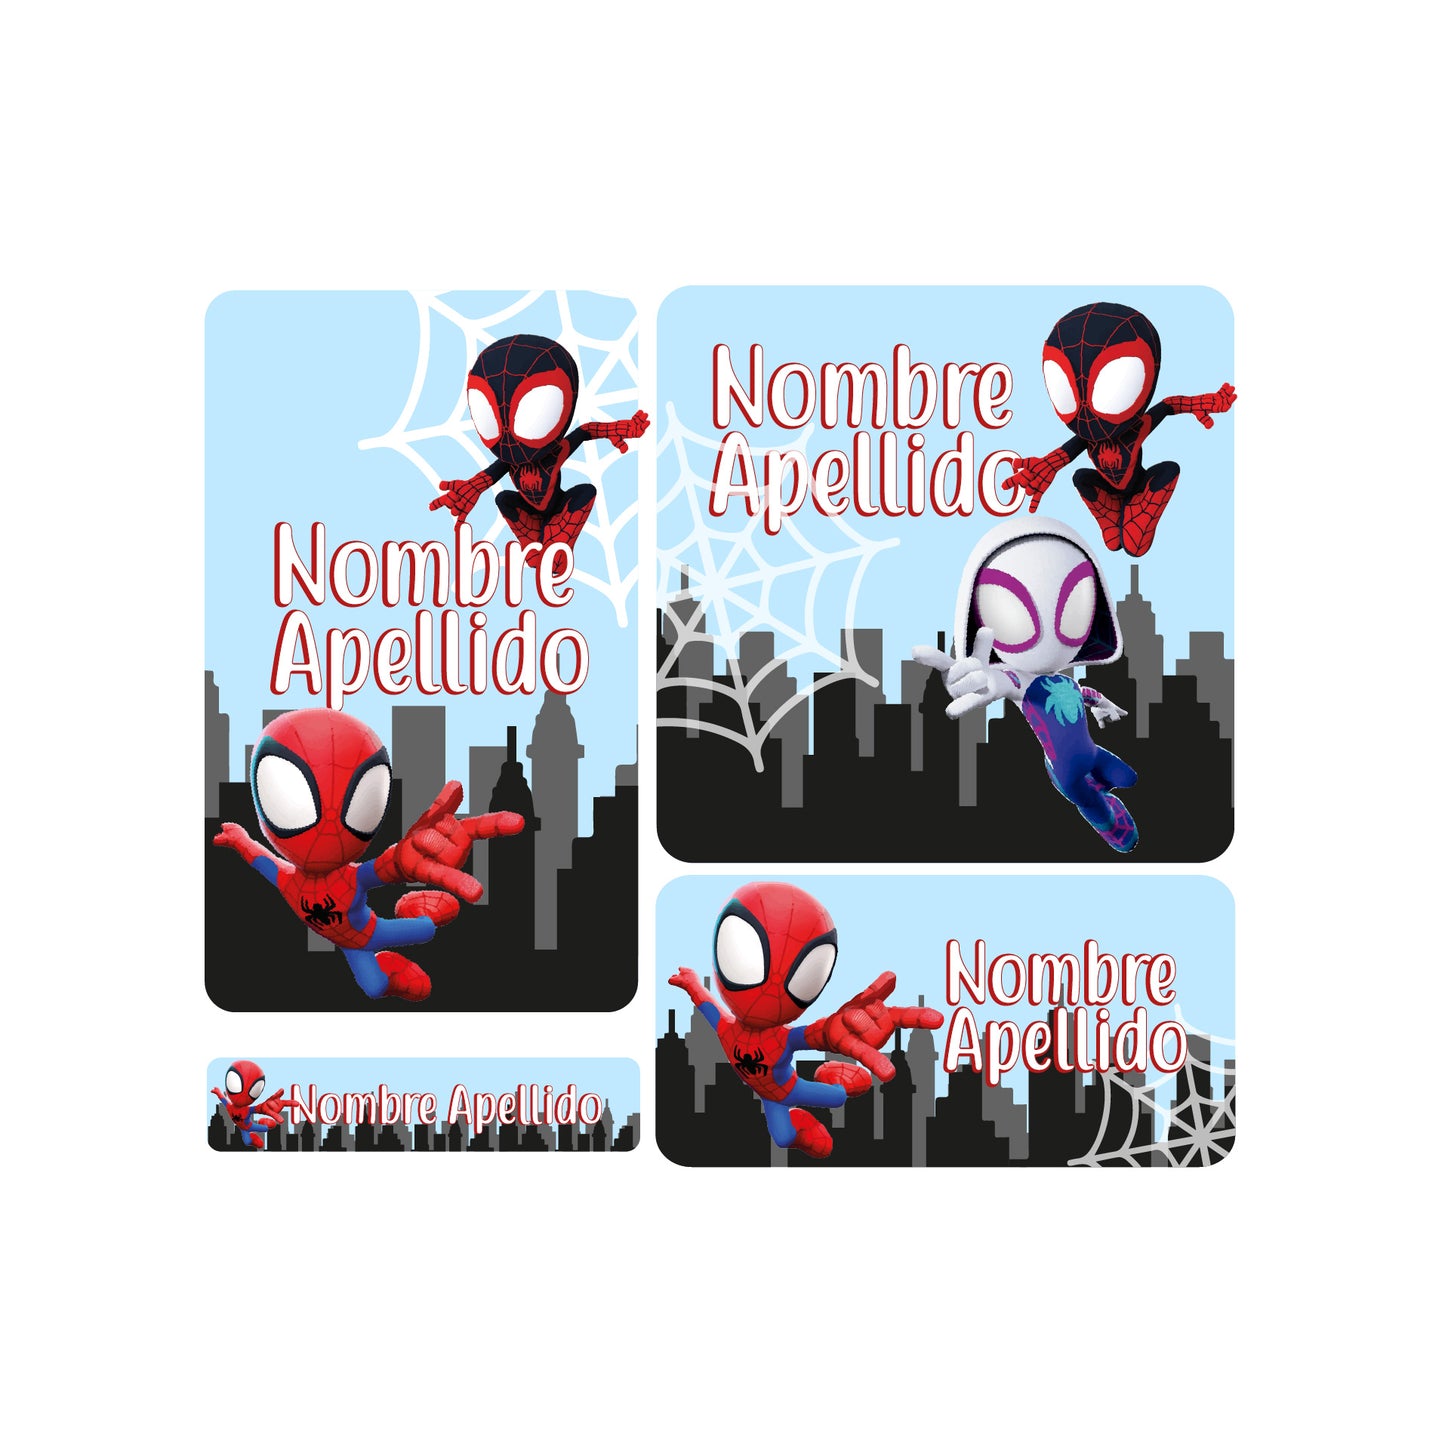 etiquetas escolares, spider man, super heroes, super heroes, spiderman, spidy and friends